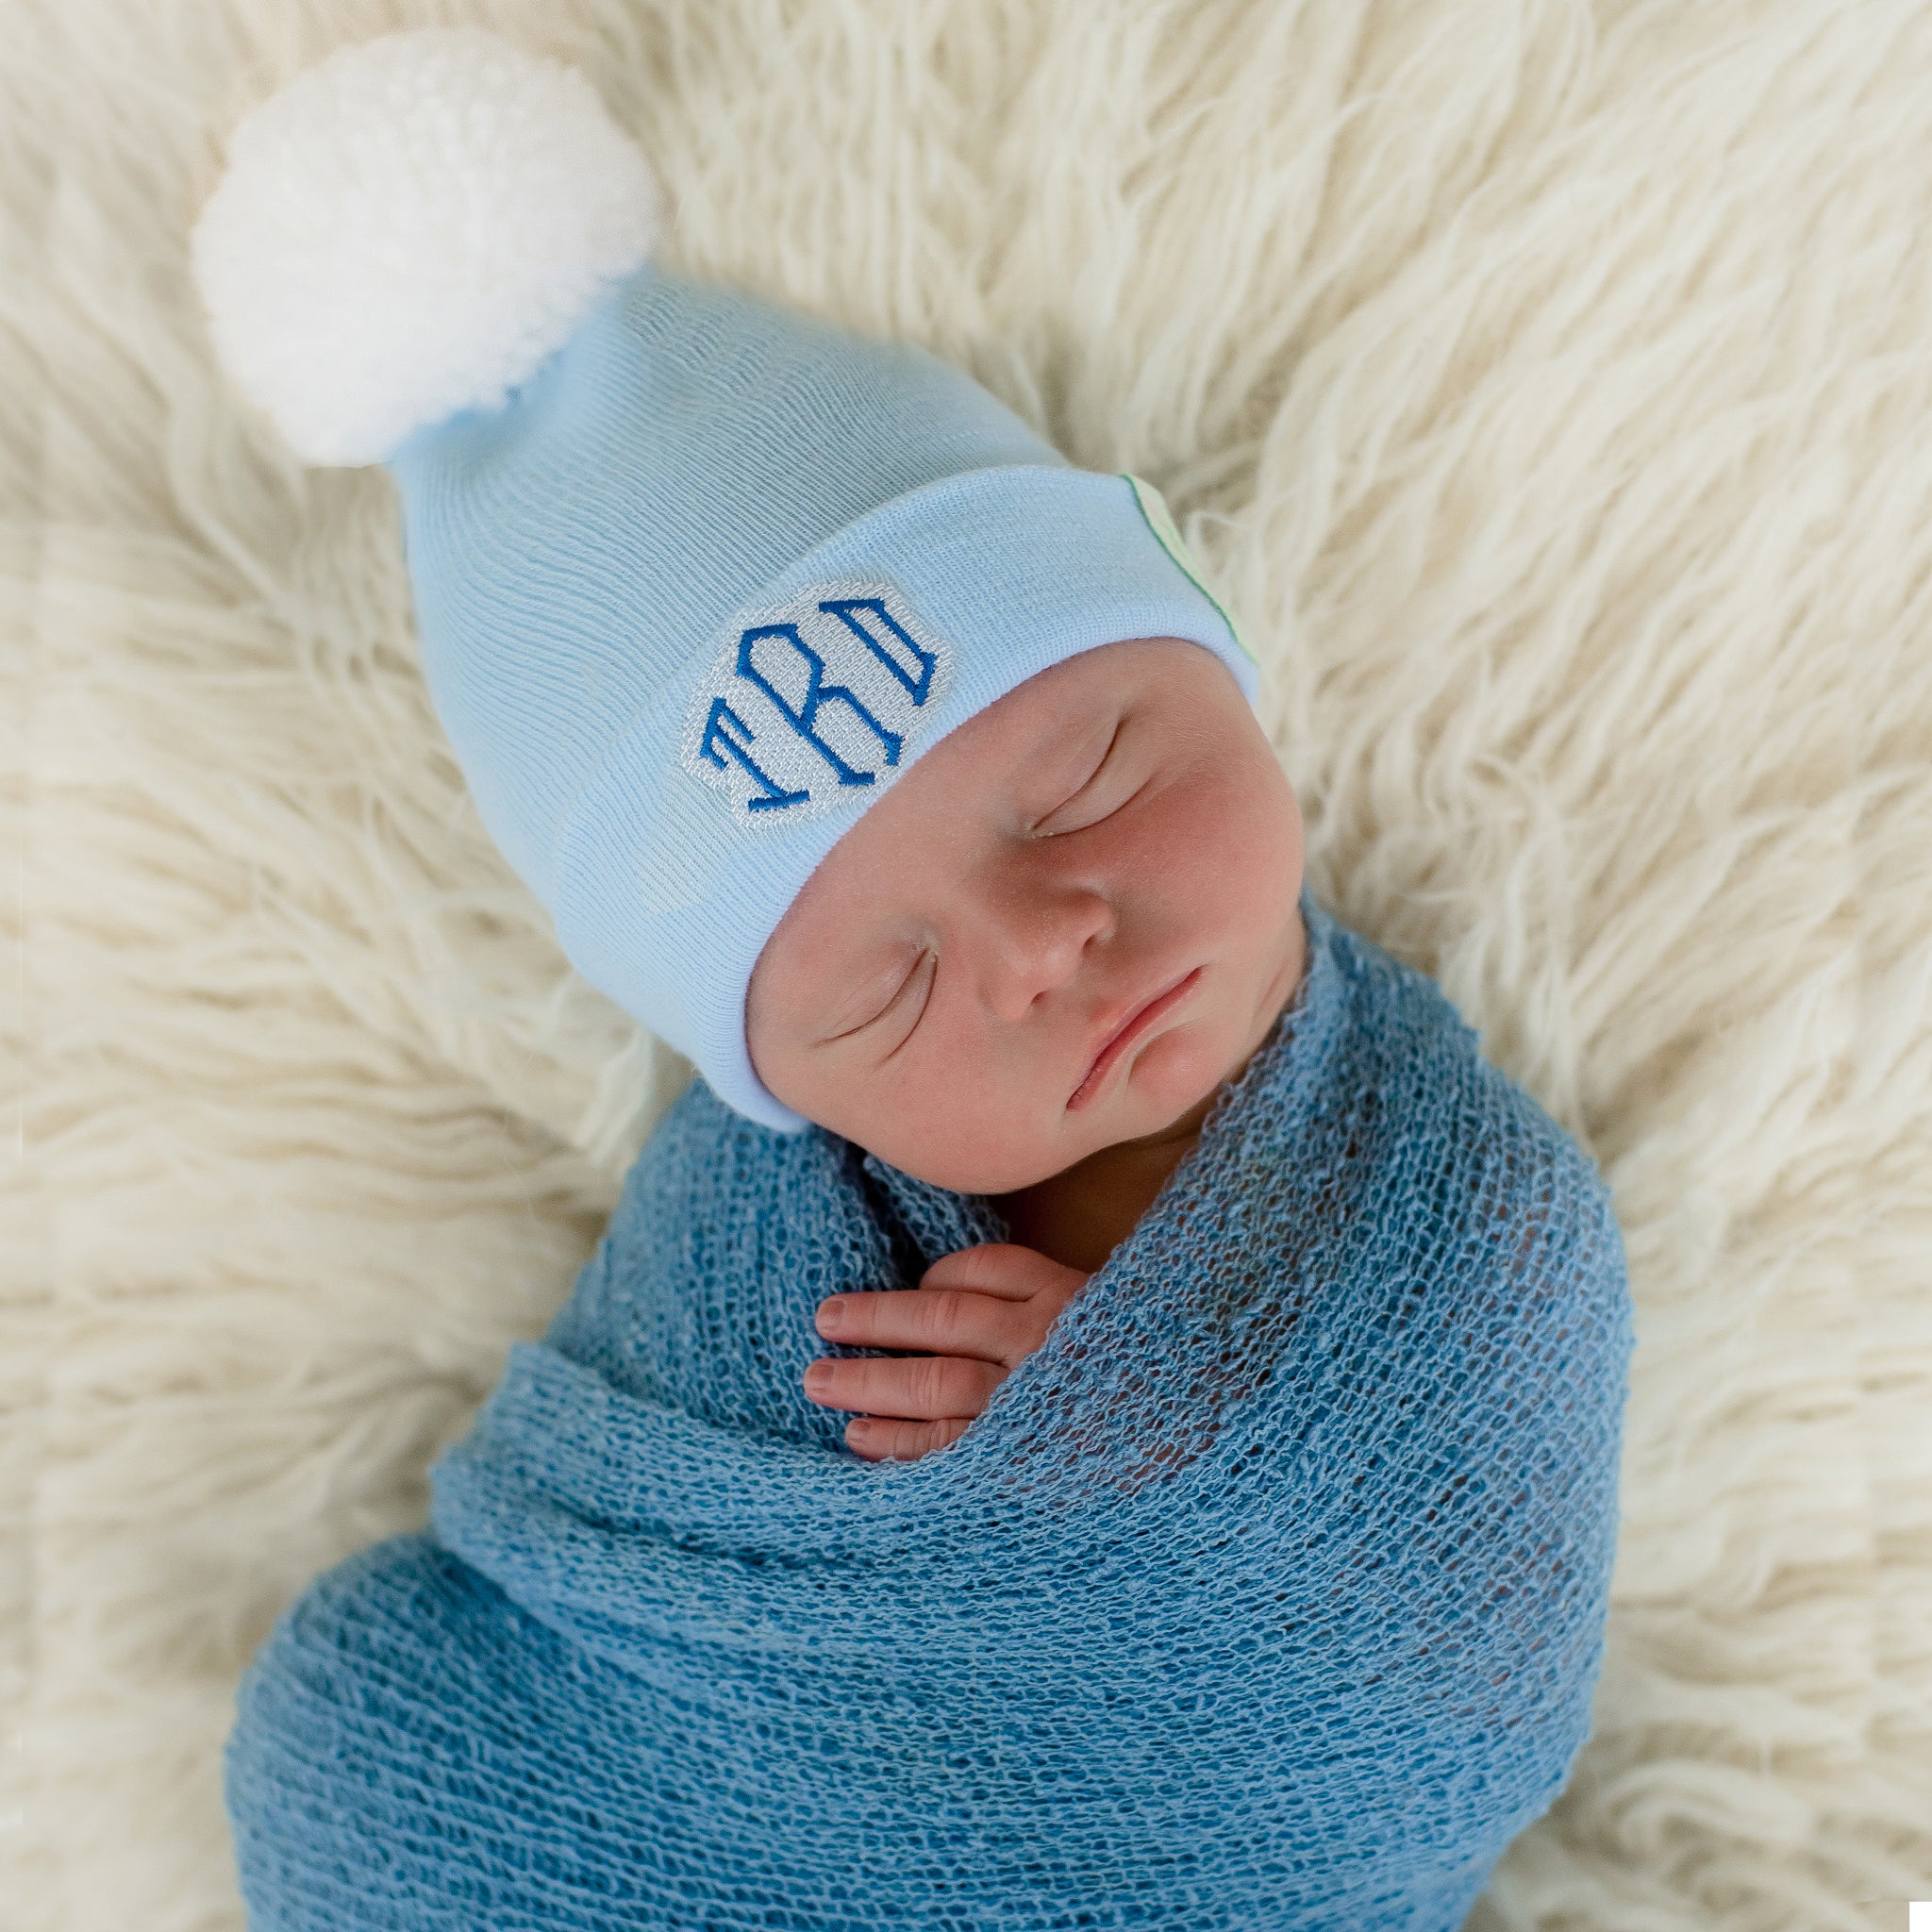 ilybean Baby Blue Beanie with White Pom Pom - Personalization Optional